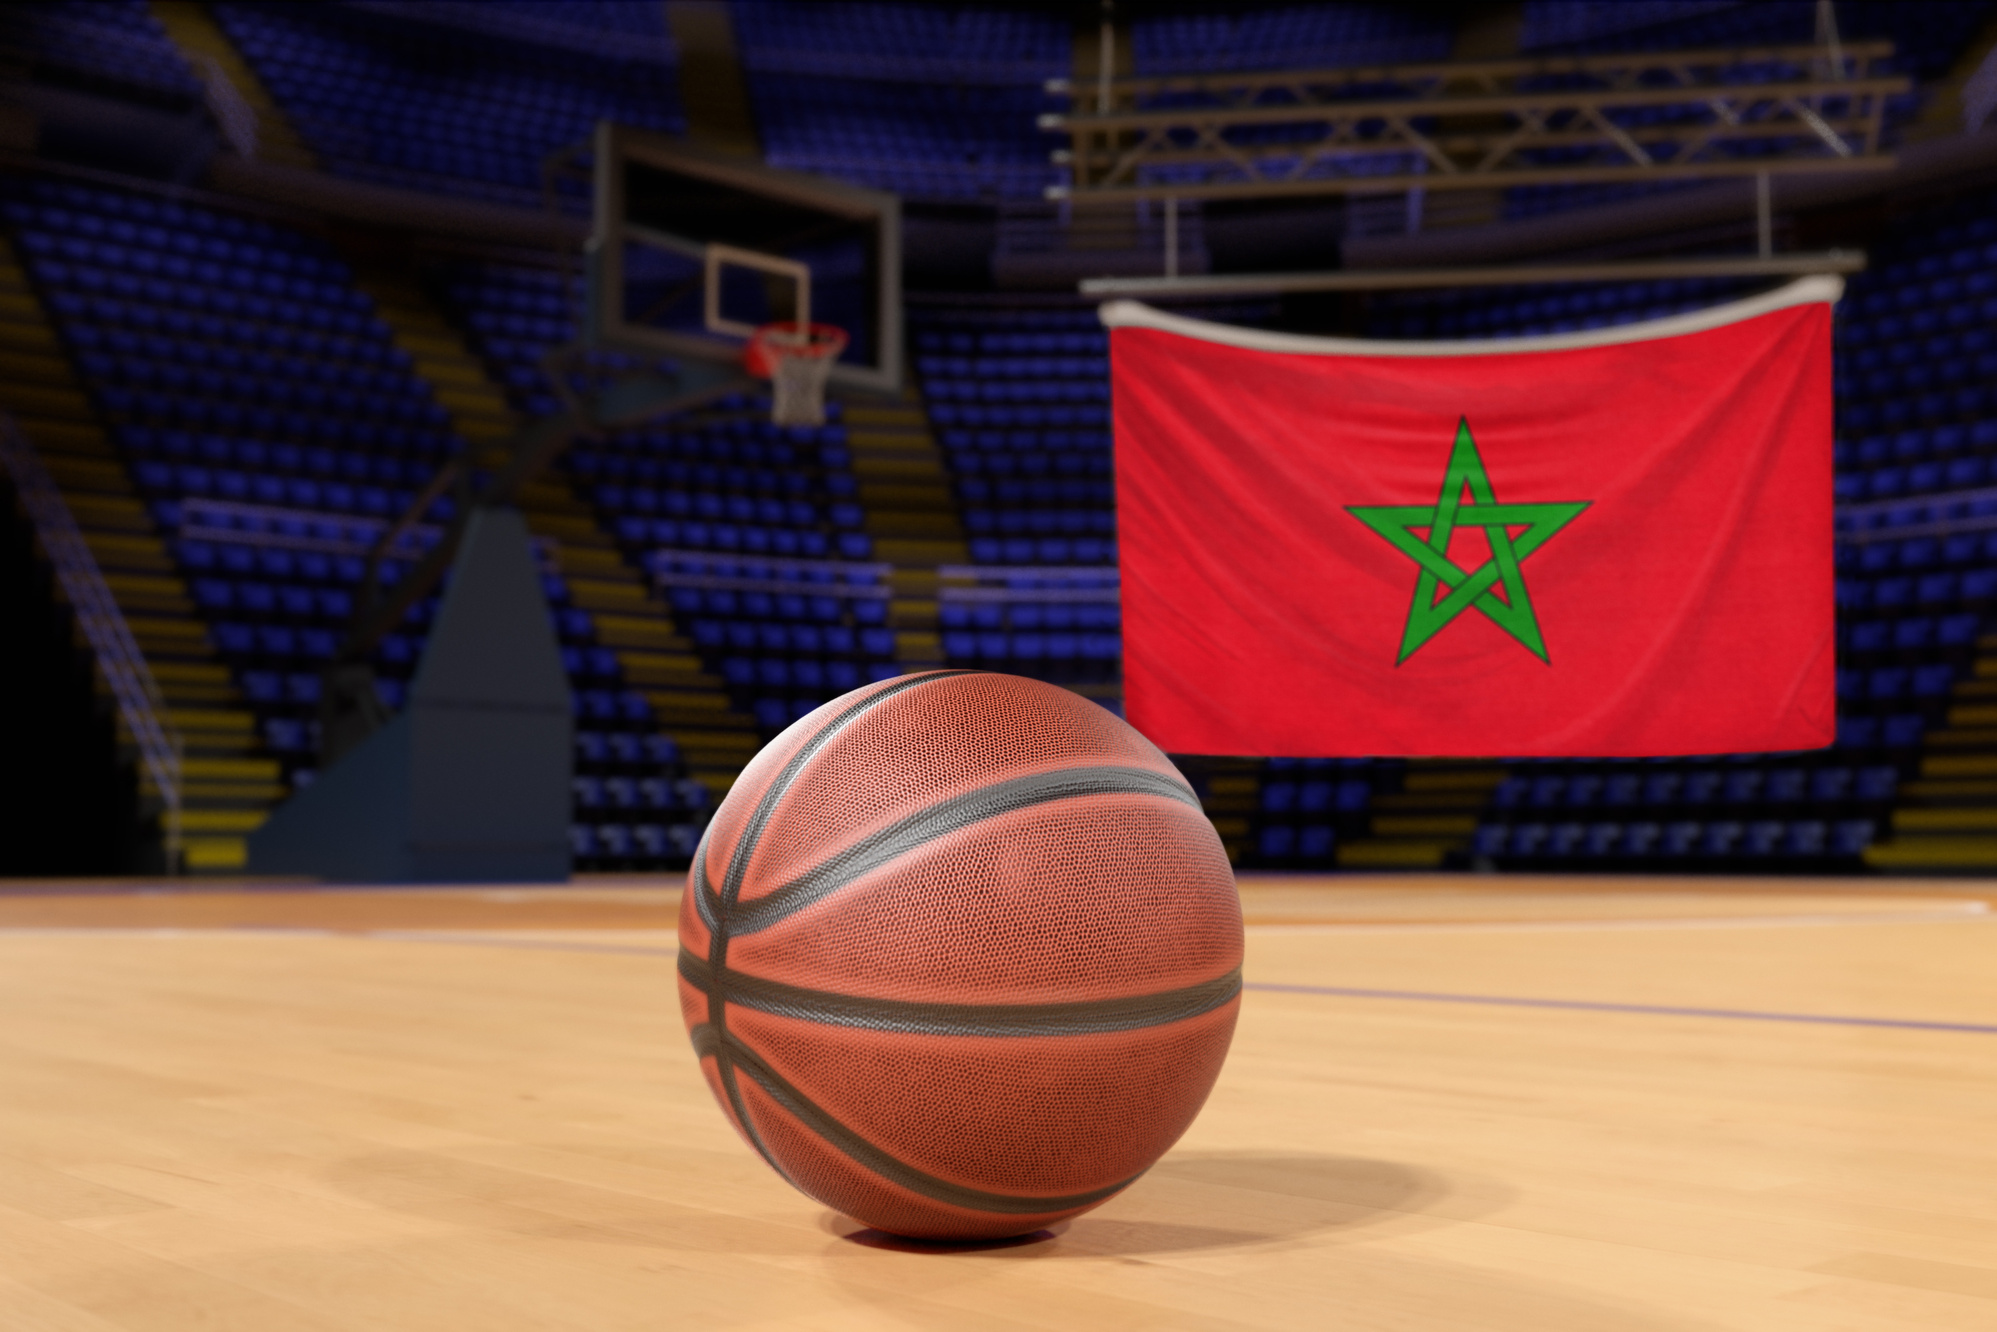 Morocco flag and basketball on Court Floor